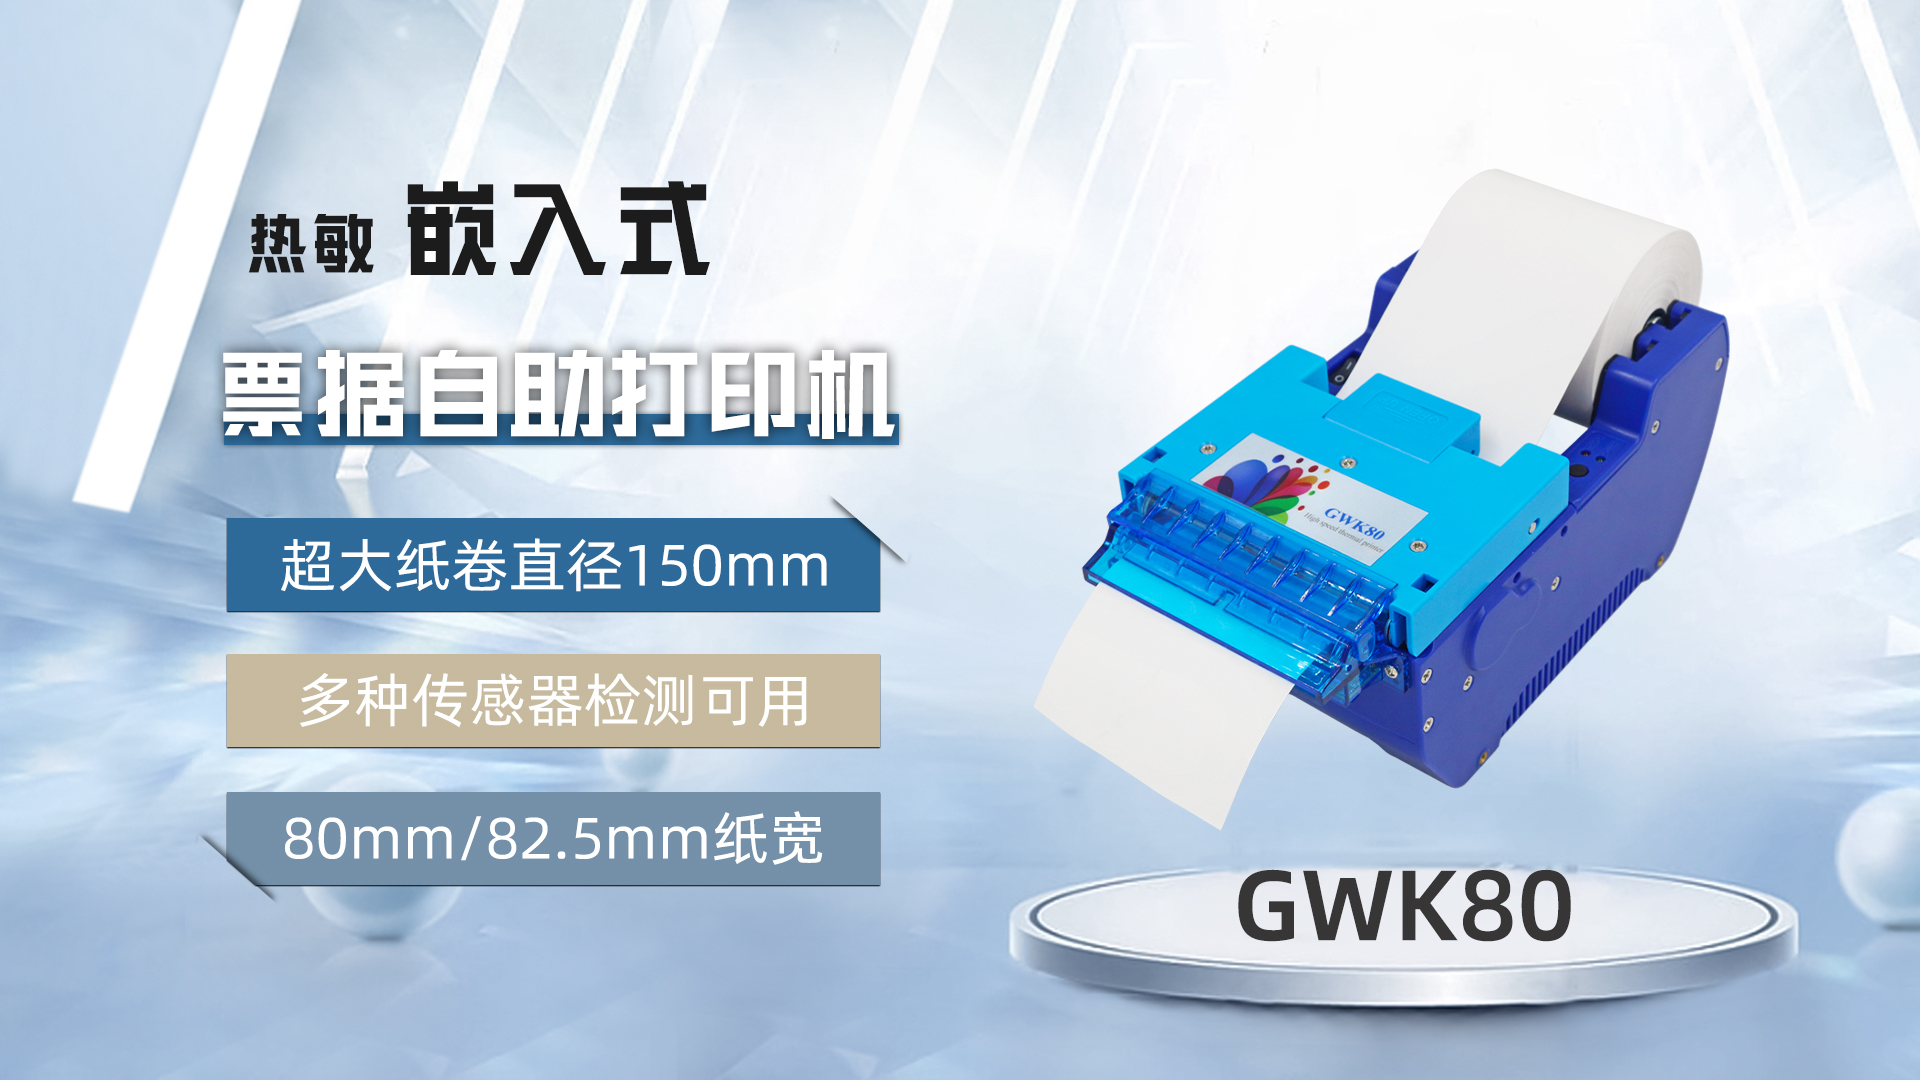 美松打印机GWK80为医院自助机提供解决方案